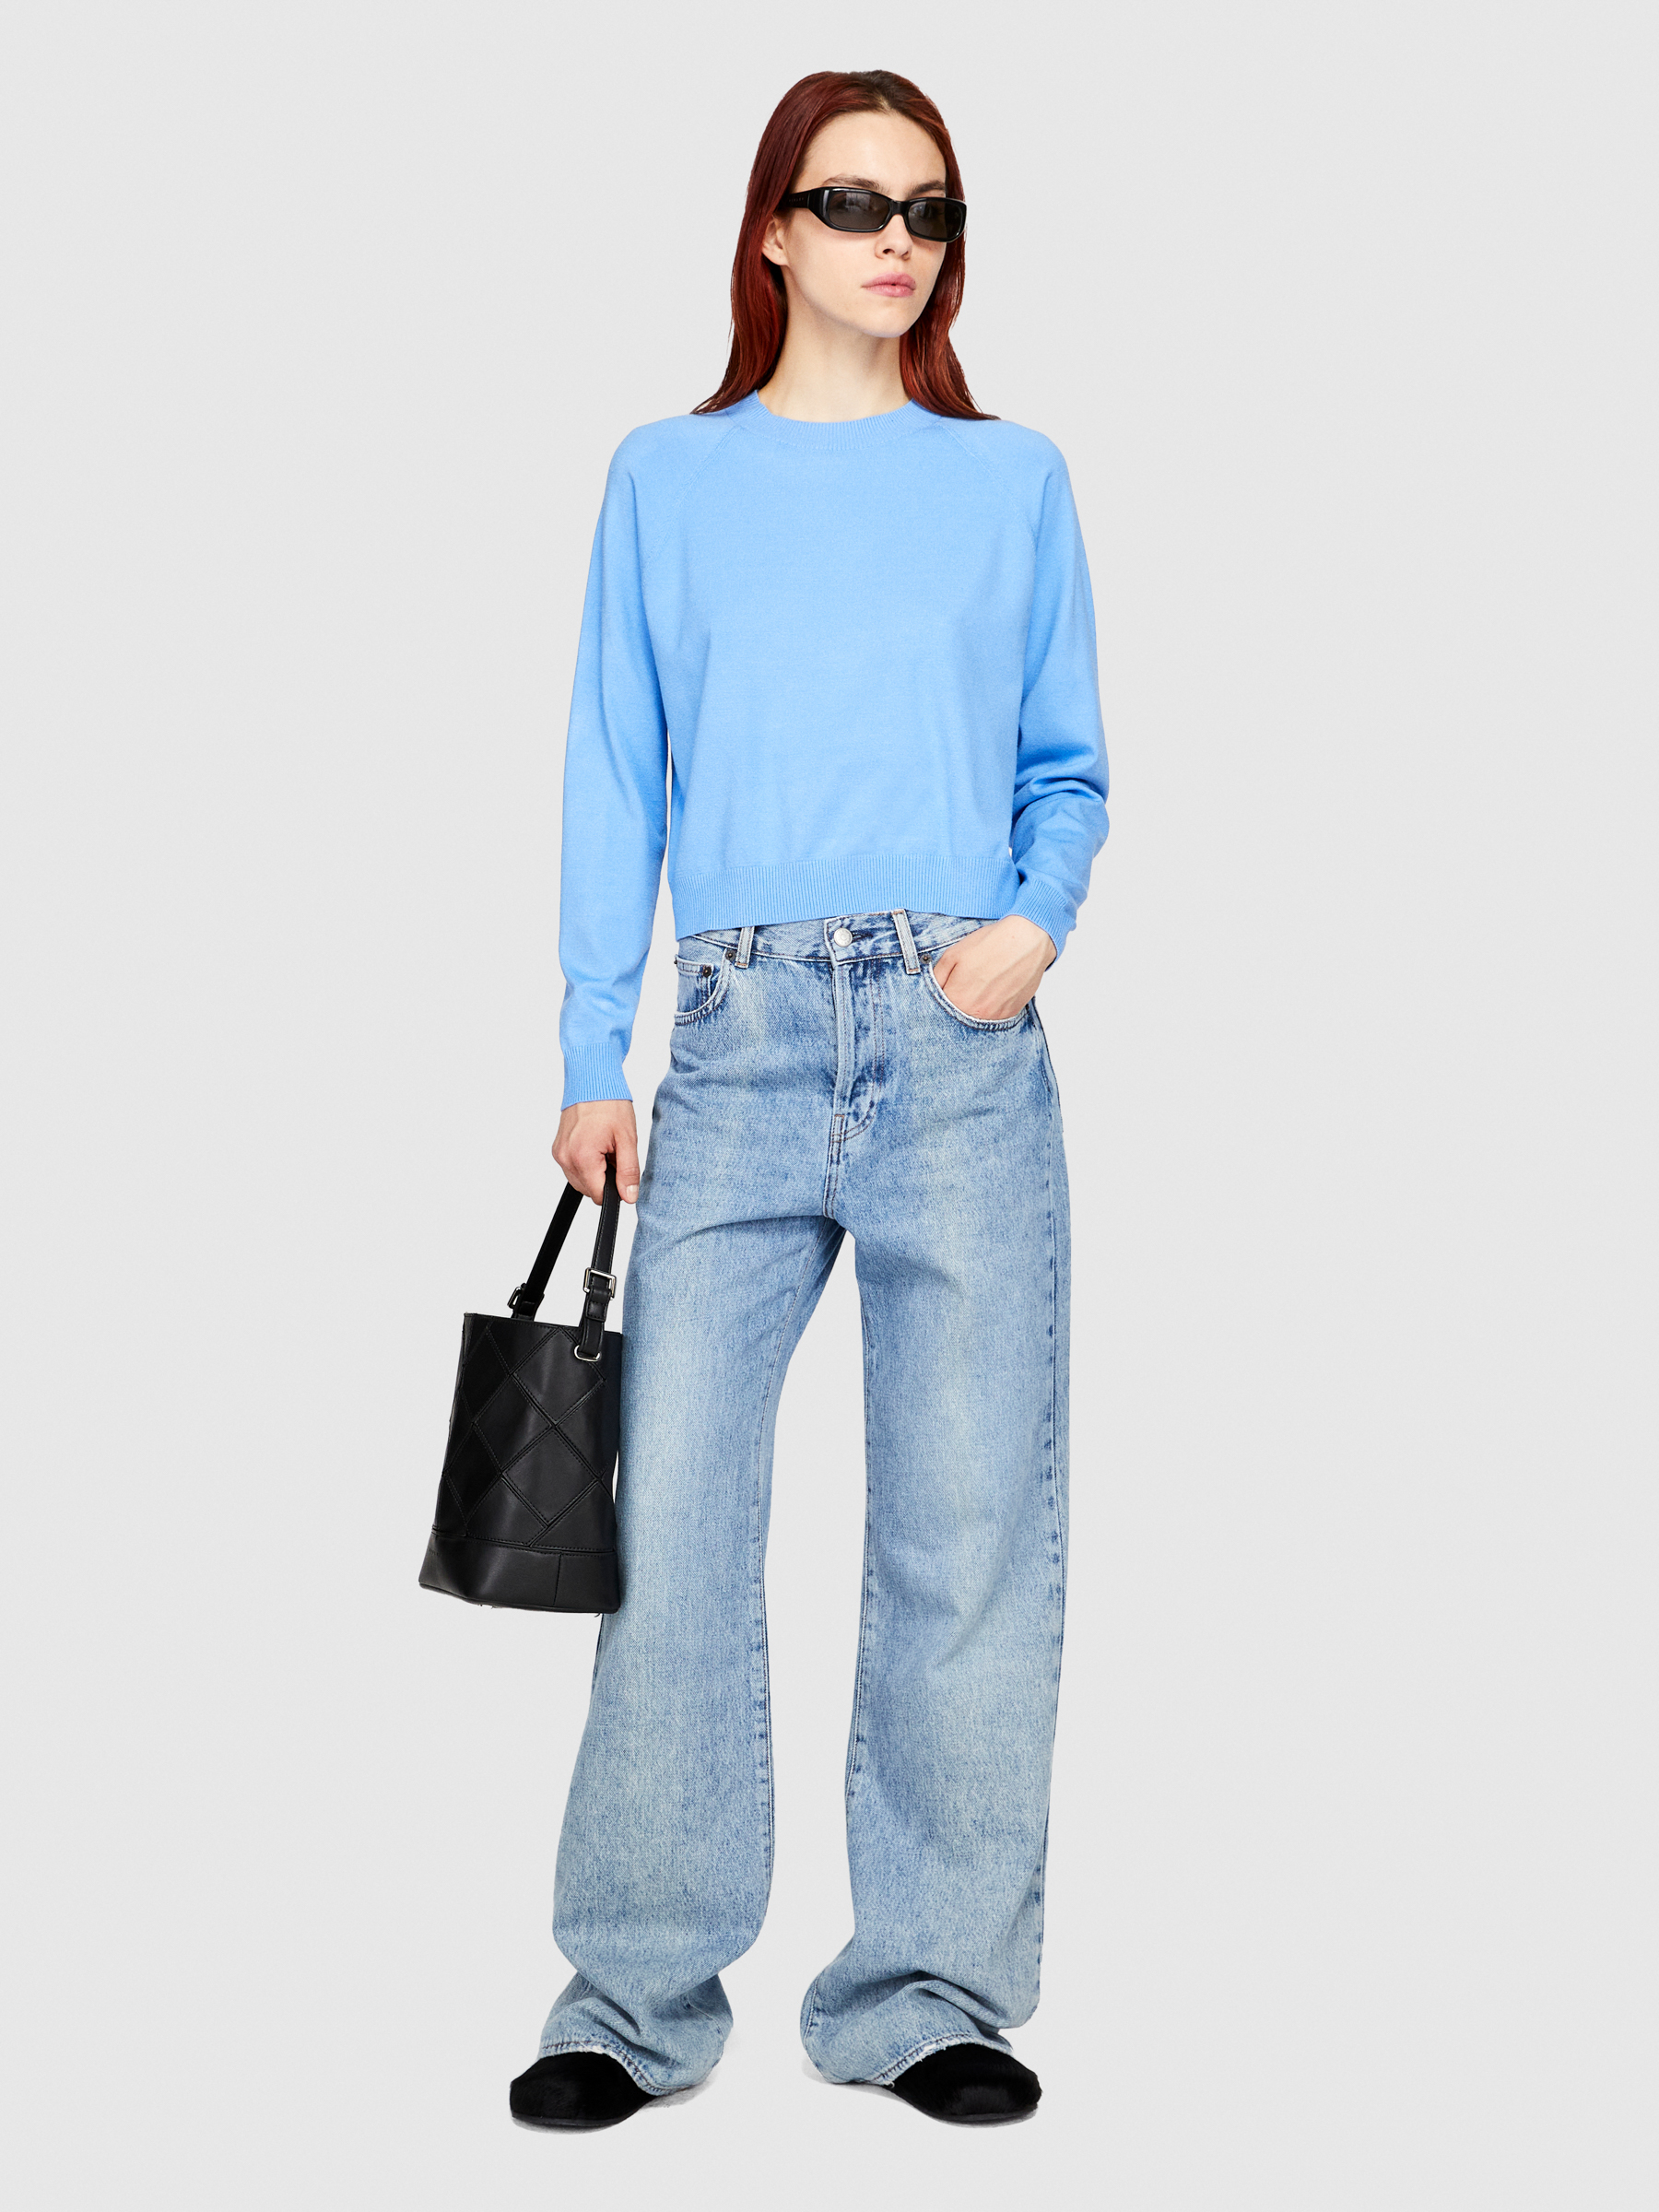 Sisley - Boxy Fit Sweater, Woman, Sky Blue, Size: M